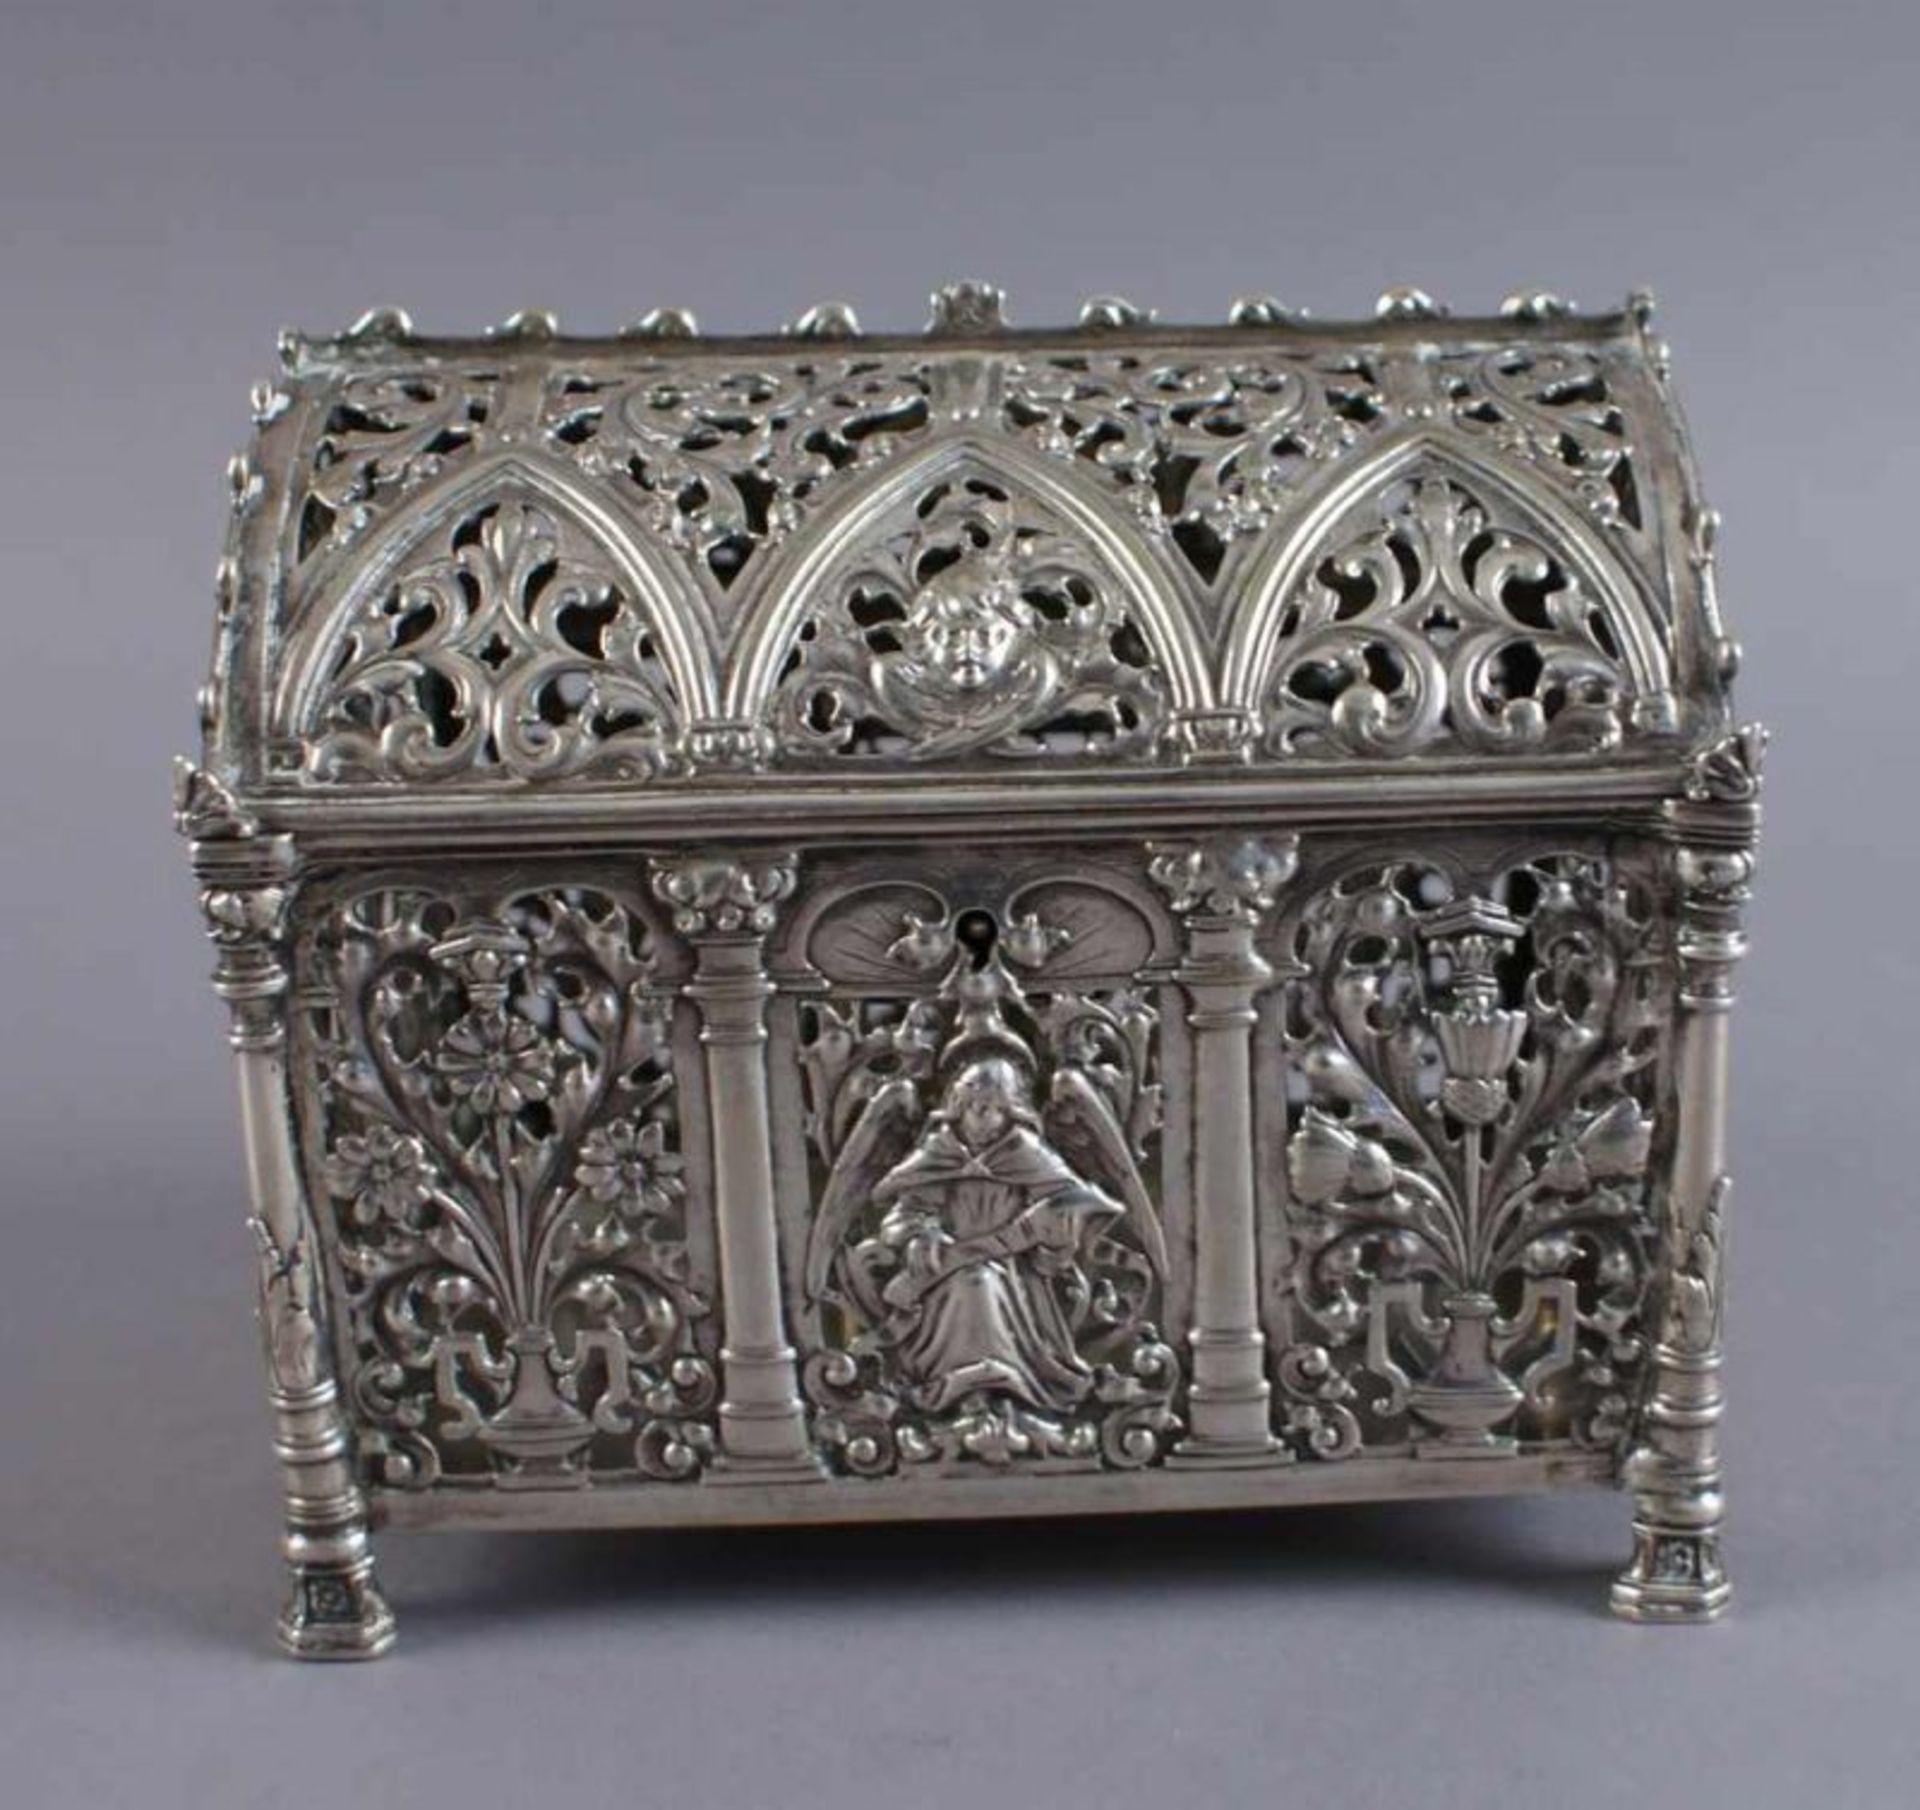 Silber Runddeckeltruhe, fein getrieben, durchbrochen gearbeitet, mit gotischen und floralen - Bild 2 aus 11